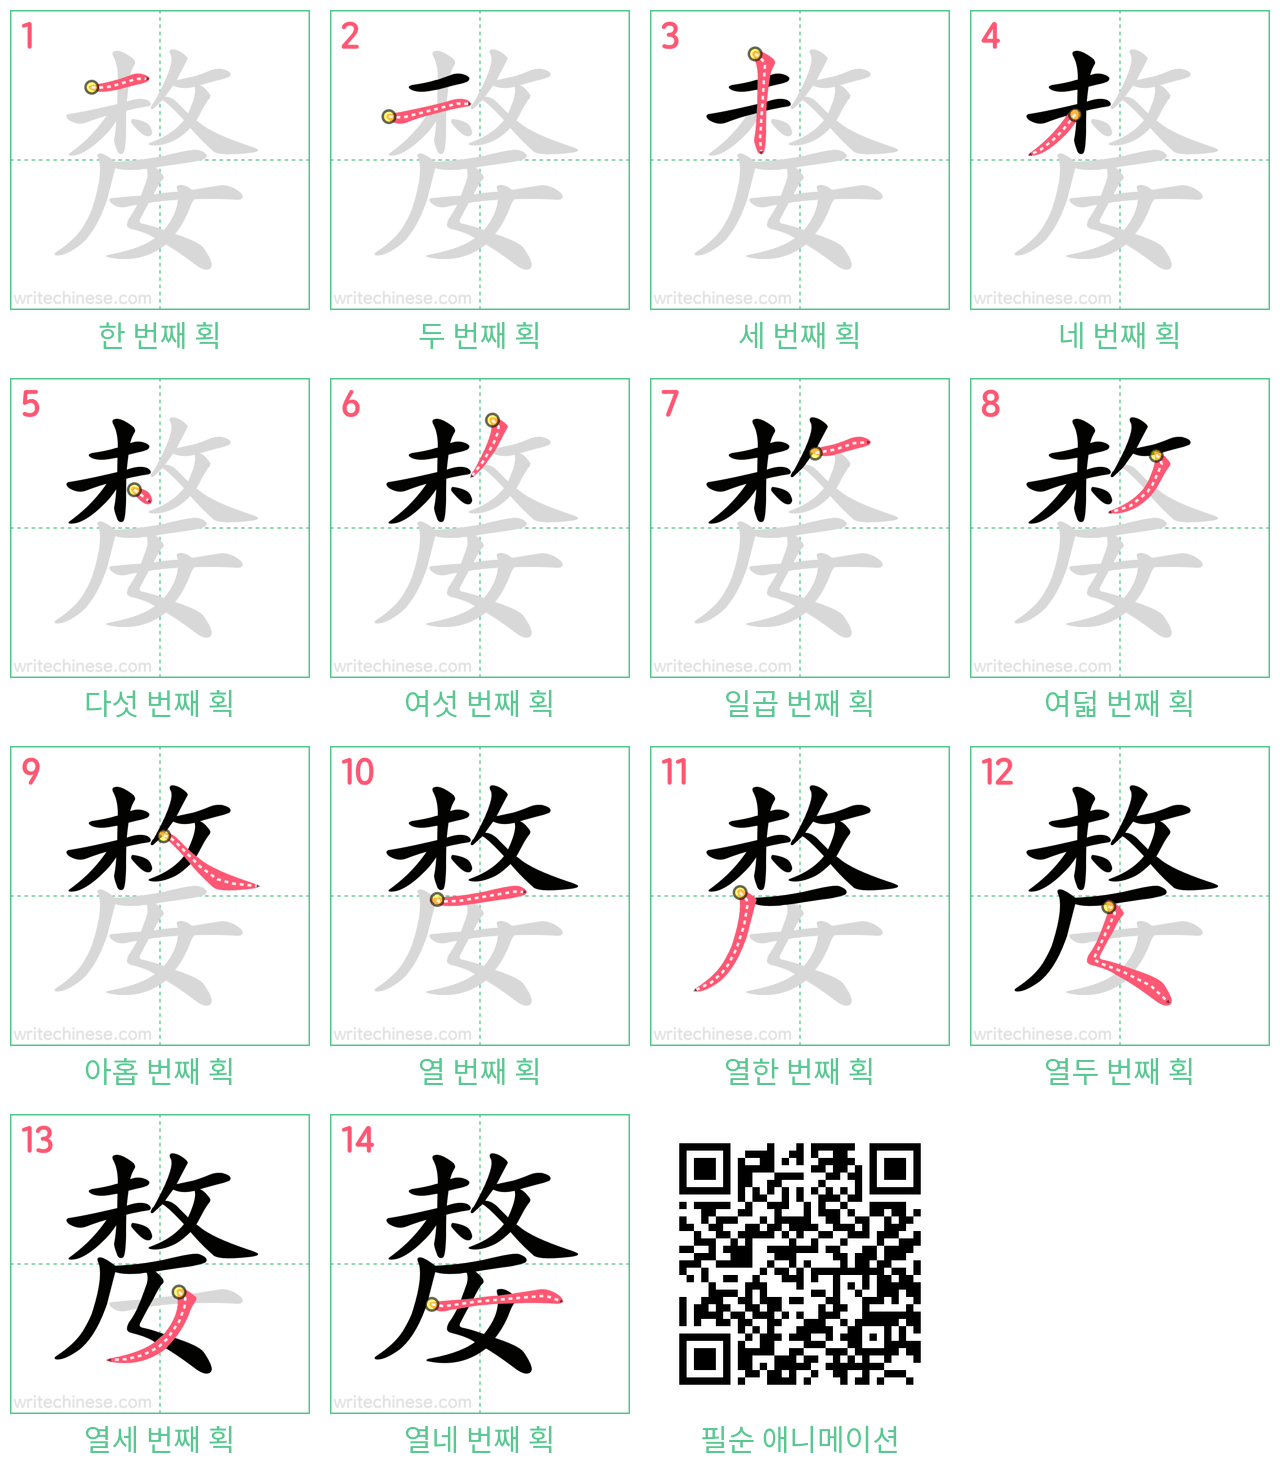 嫠 step-by-step stroke order diagrams